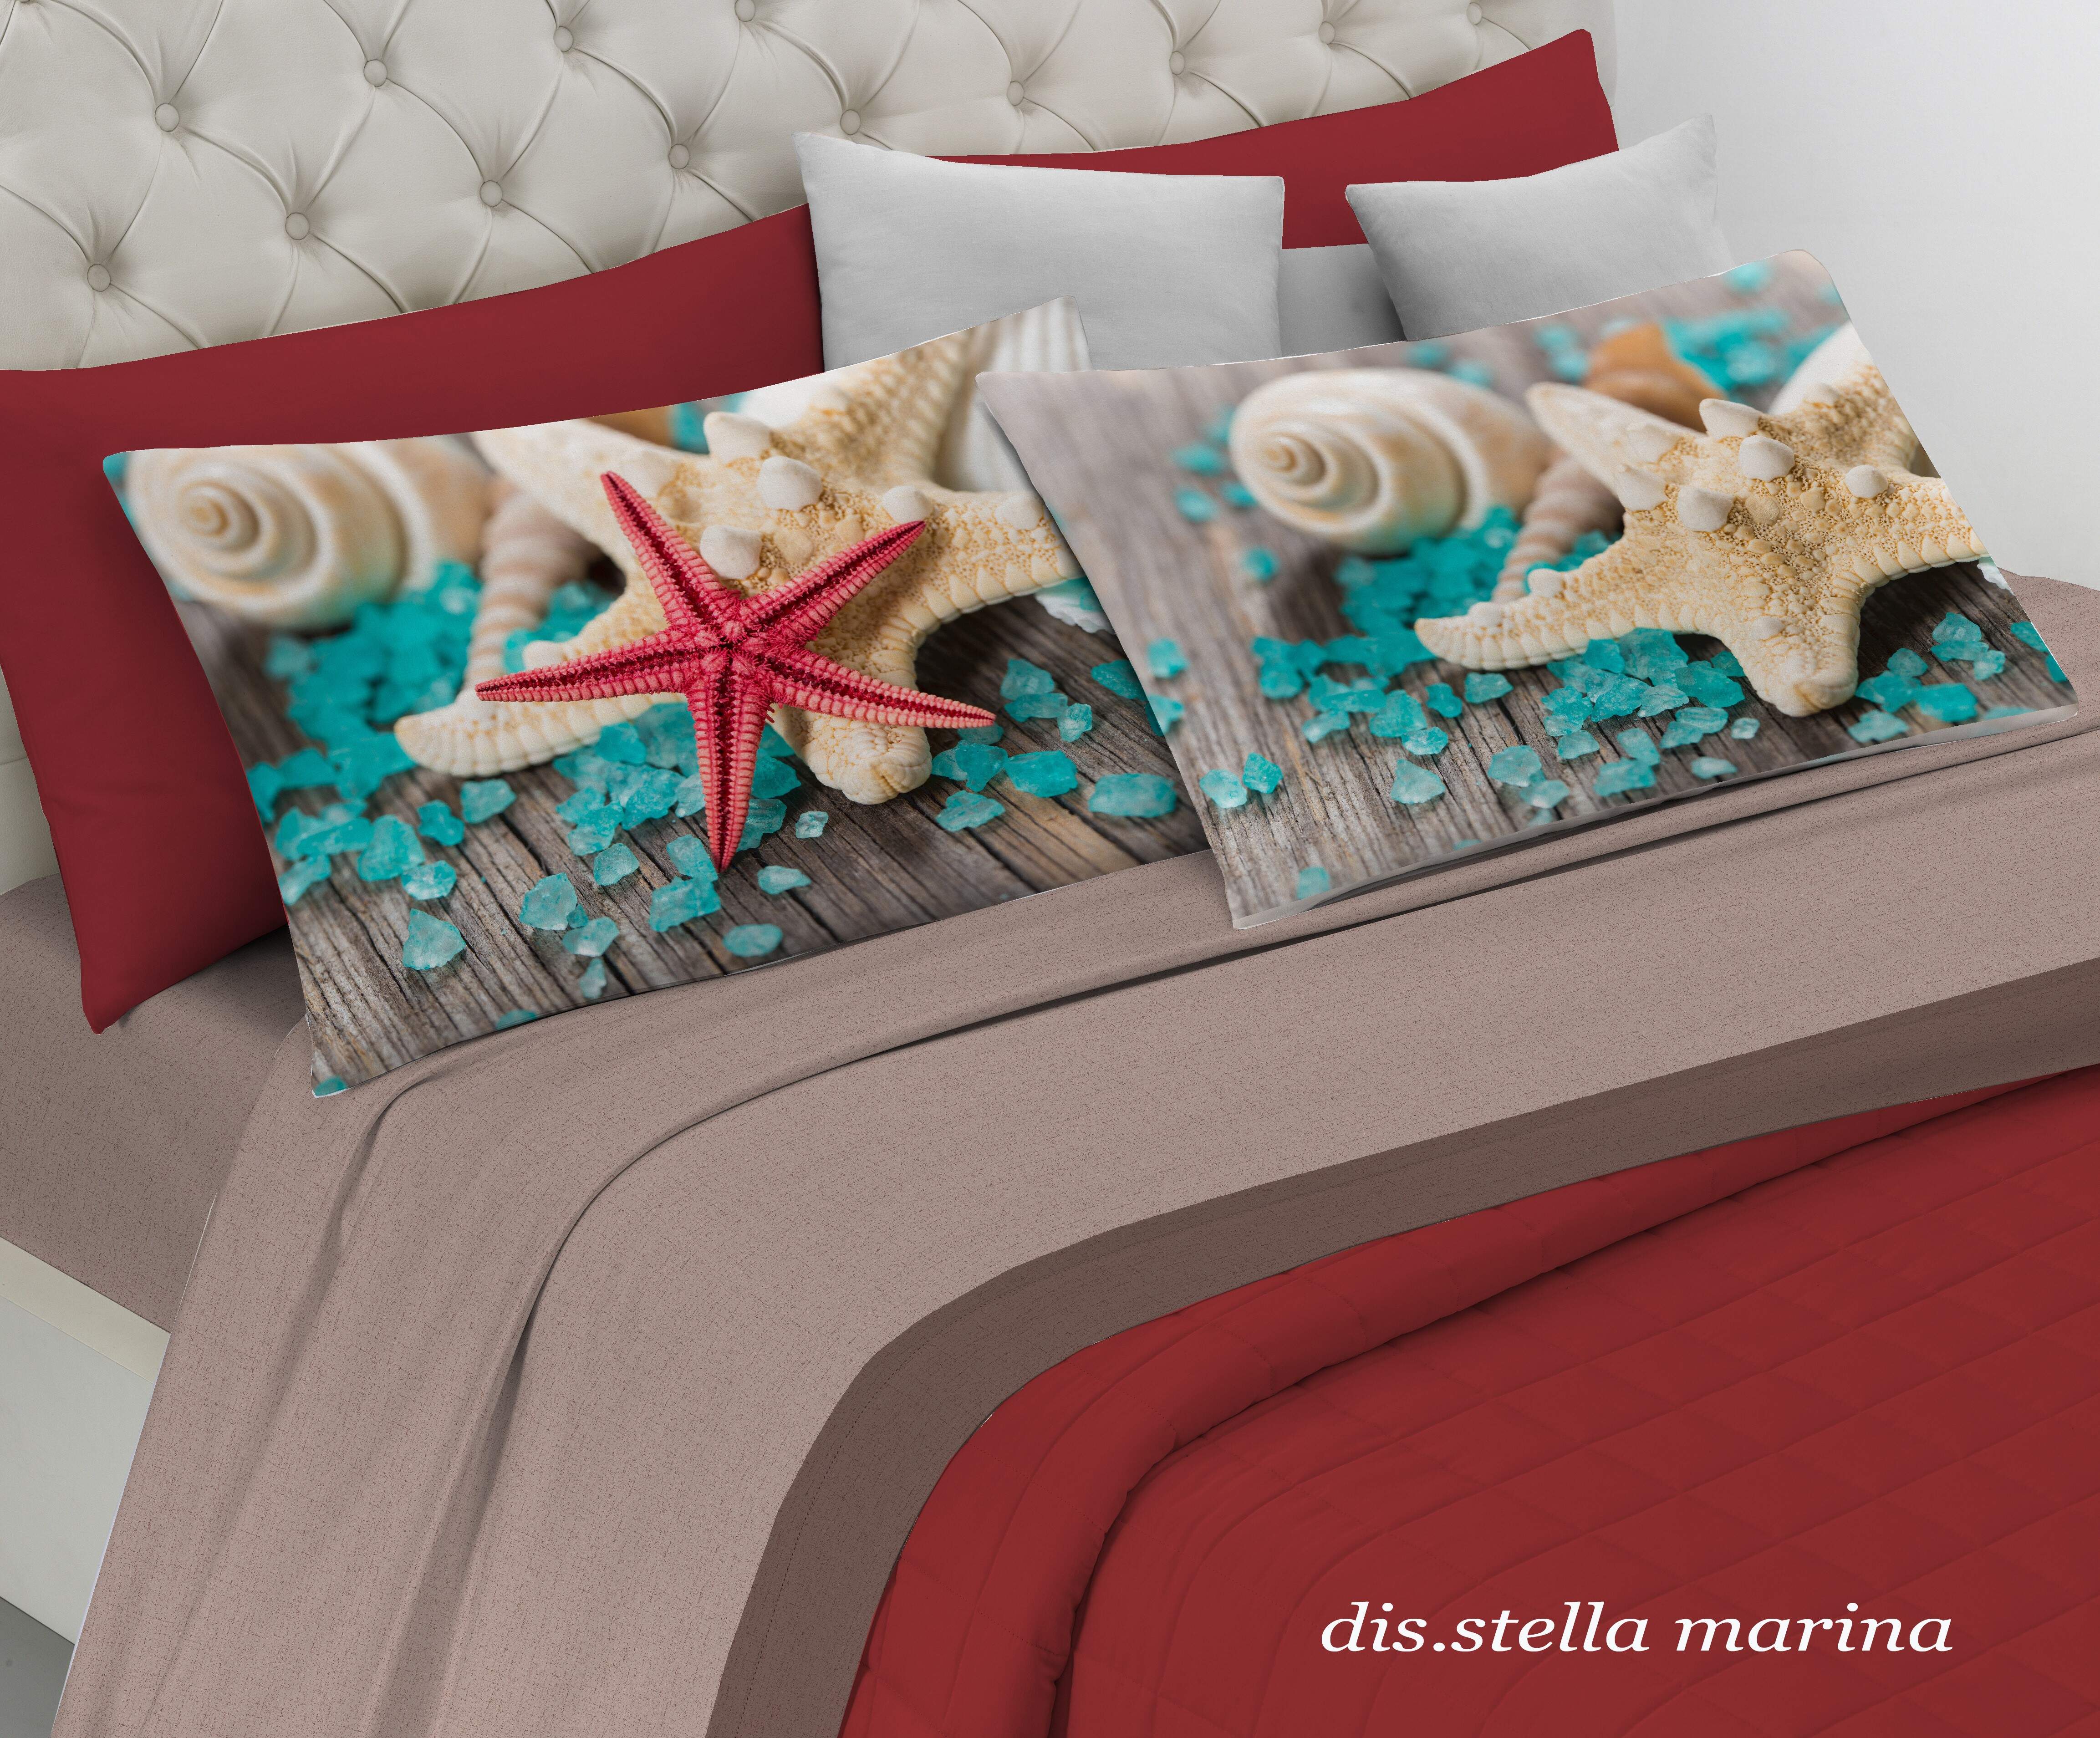 Completo letto lenzuola matrimoniale Stella marina Spin off